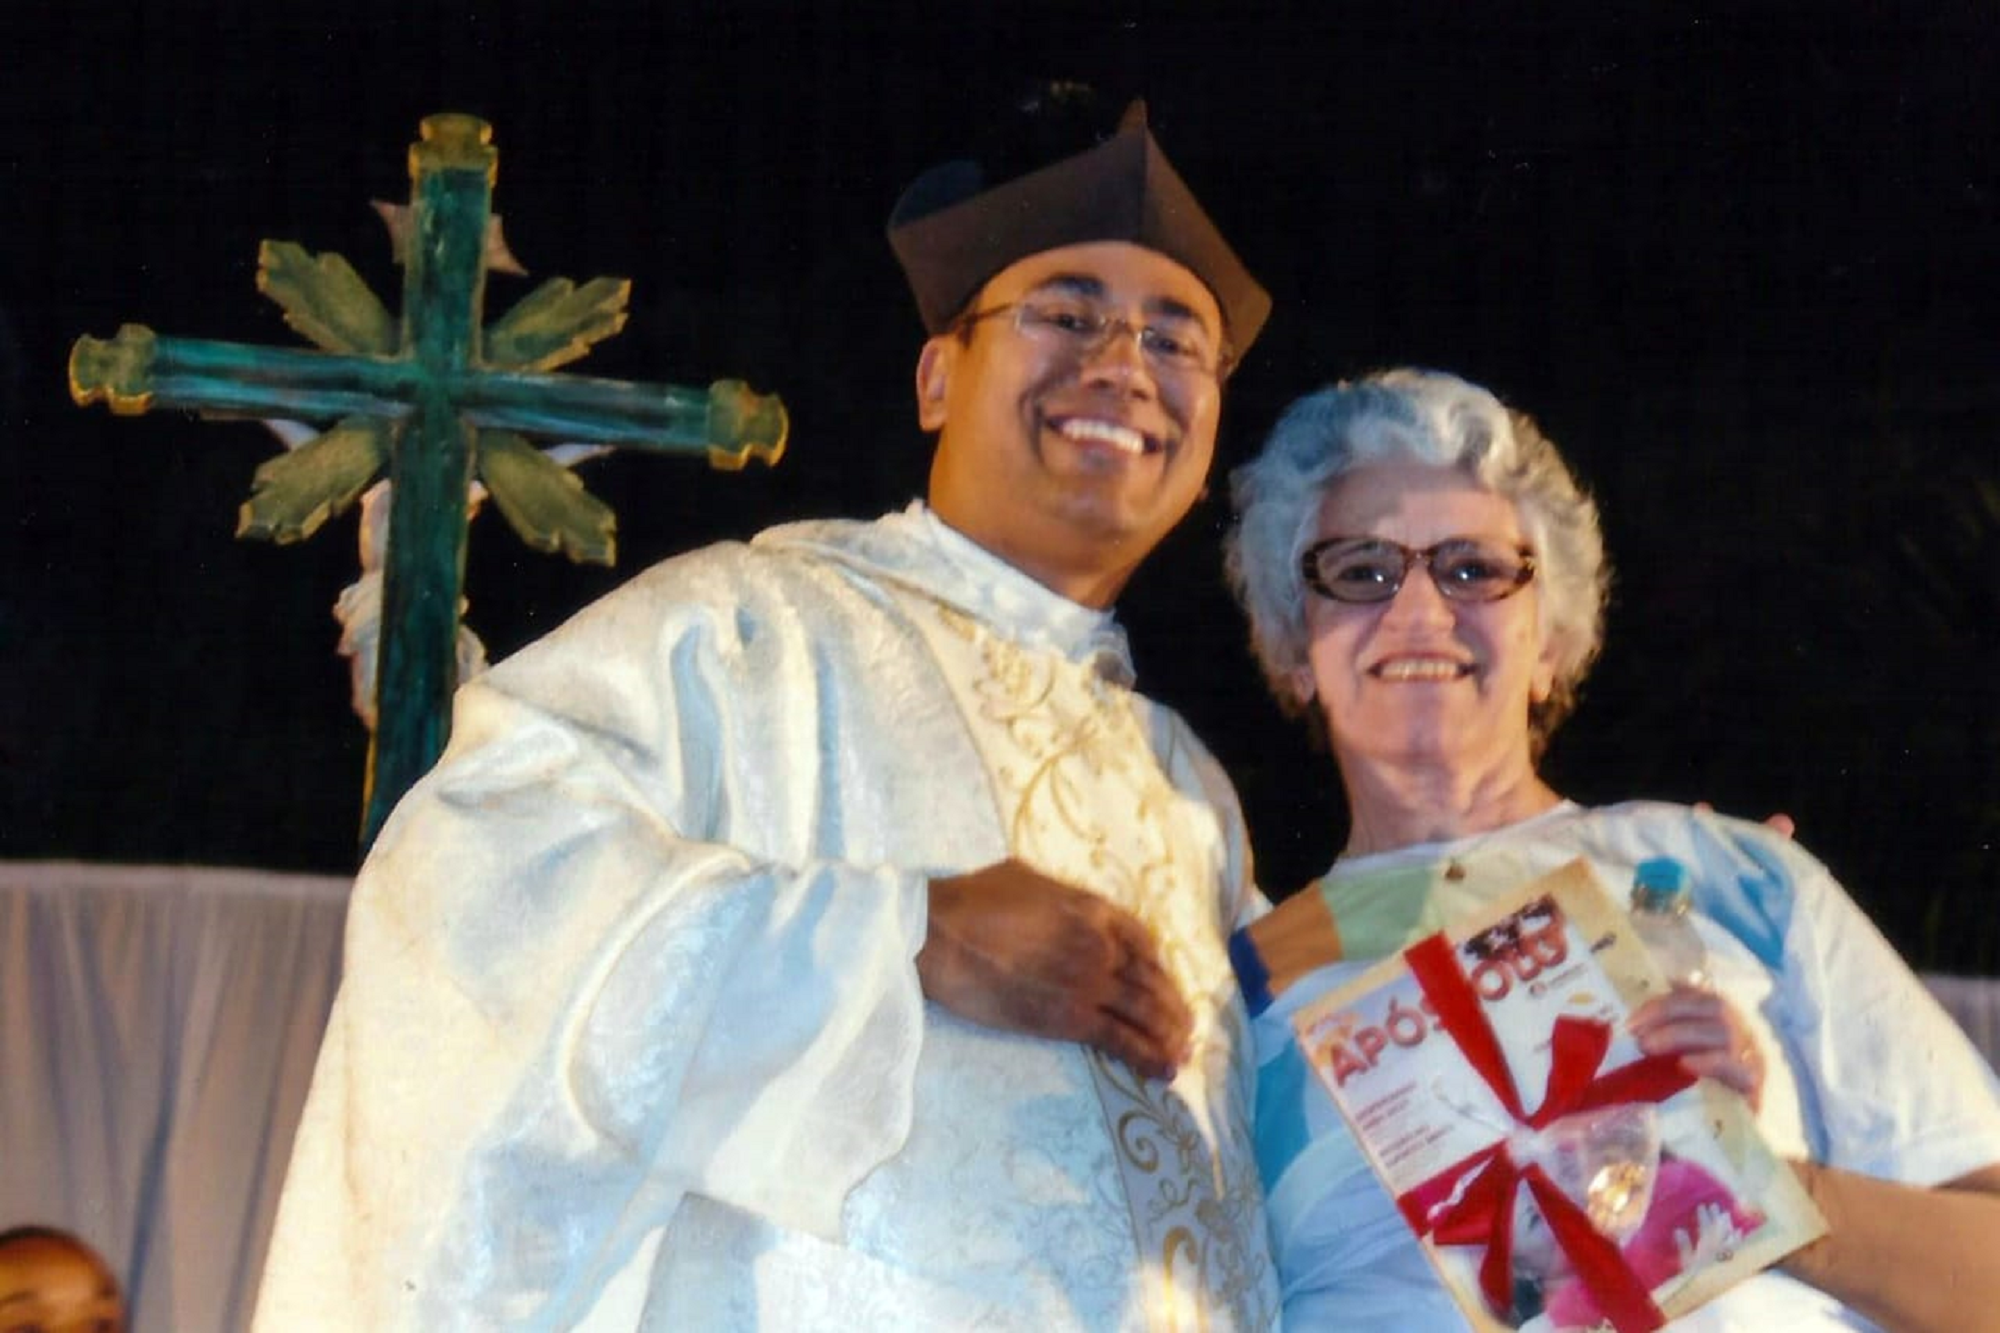 Ivone sendo homenageada pelo pároco de Bom Sucesso/MG, Frei William, pela participação em um dos movimentos da paróquia, em 2017 (Foto: Acervo pessoal)